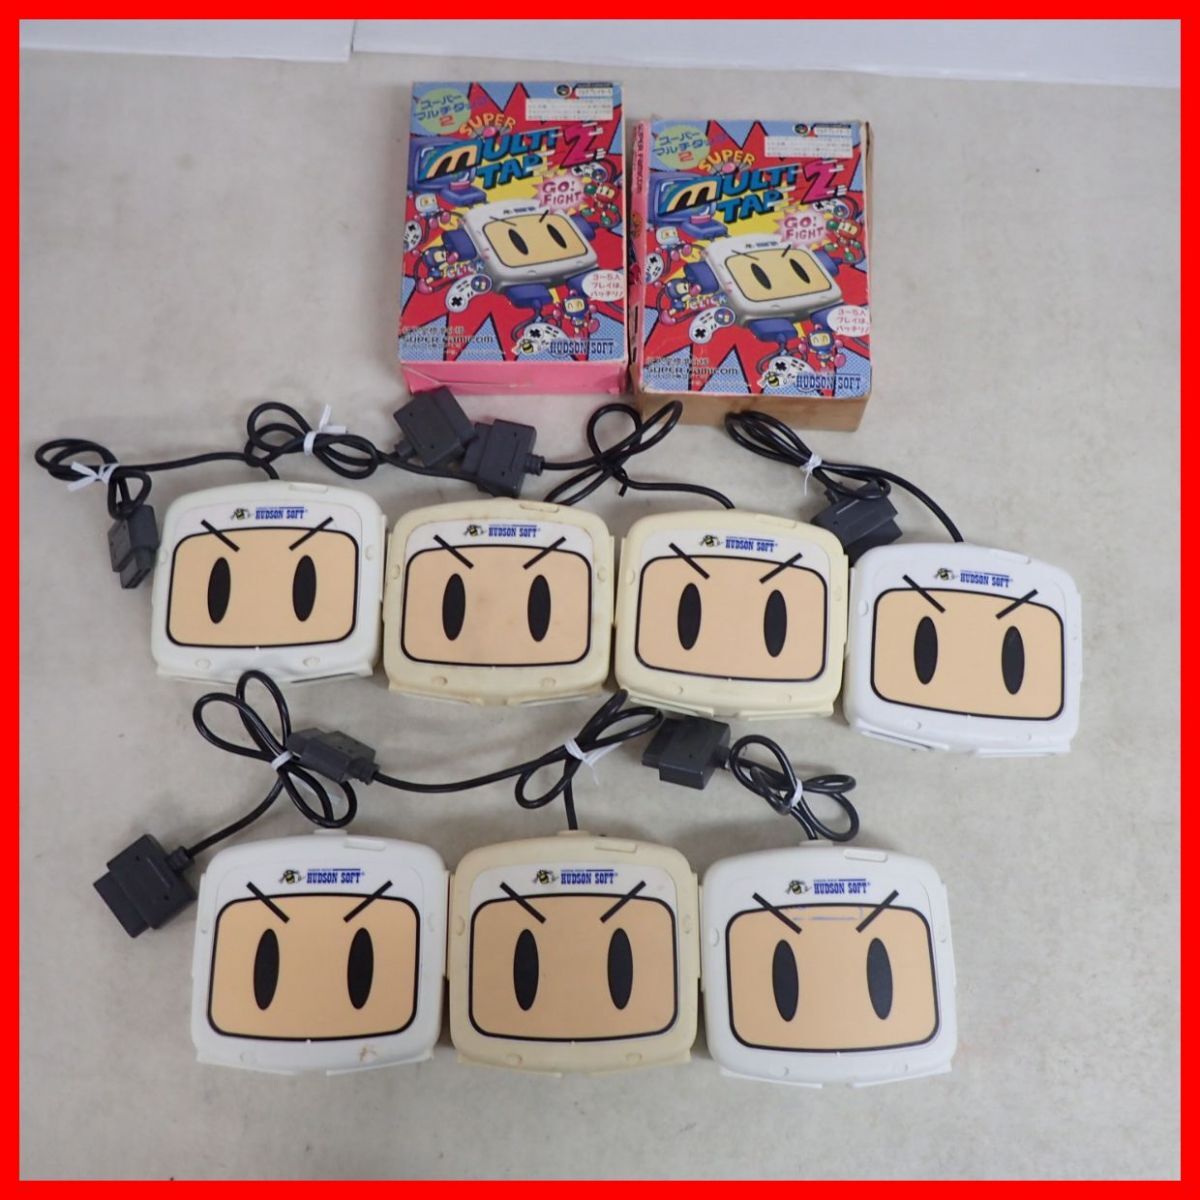 SFC Hsu fami периферийные устройства ASCII палочка / Super Famicom мышь / мульти- ответвление / super Game Boy и т.п. совместно много комплект [40